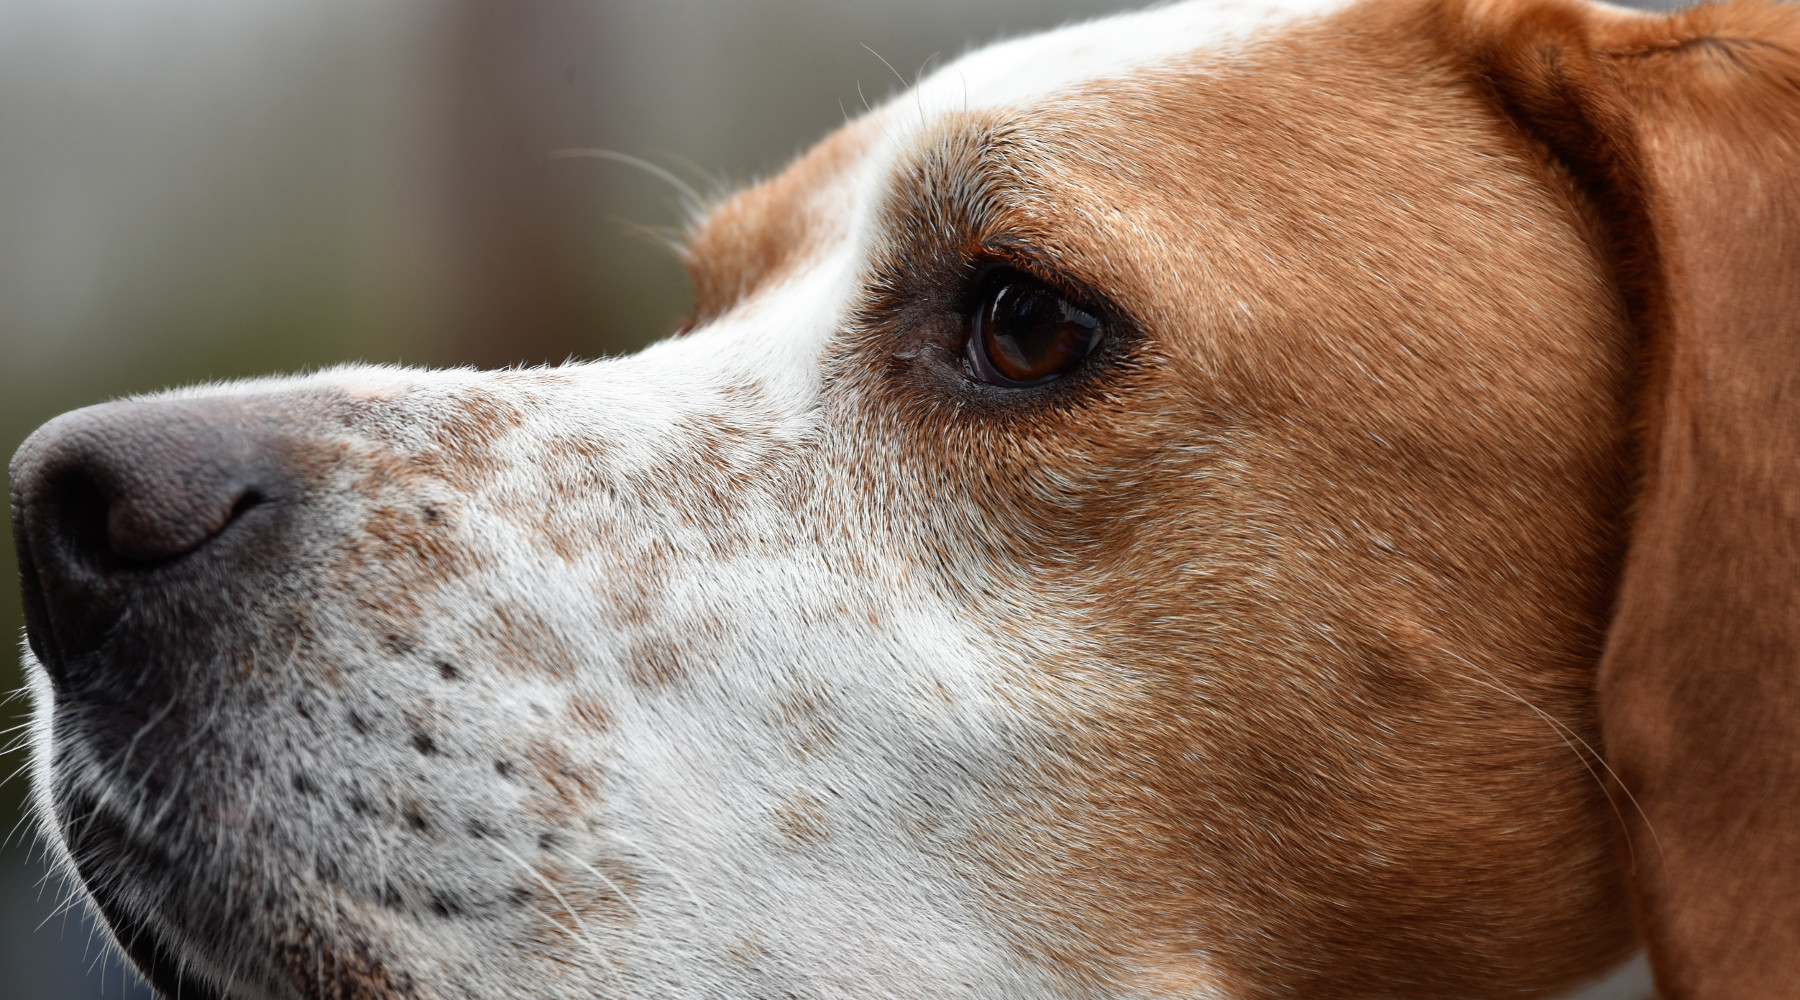 Caccia in Lombardia: testa di cane da caccia in primo piano